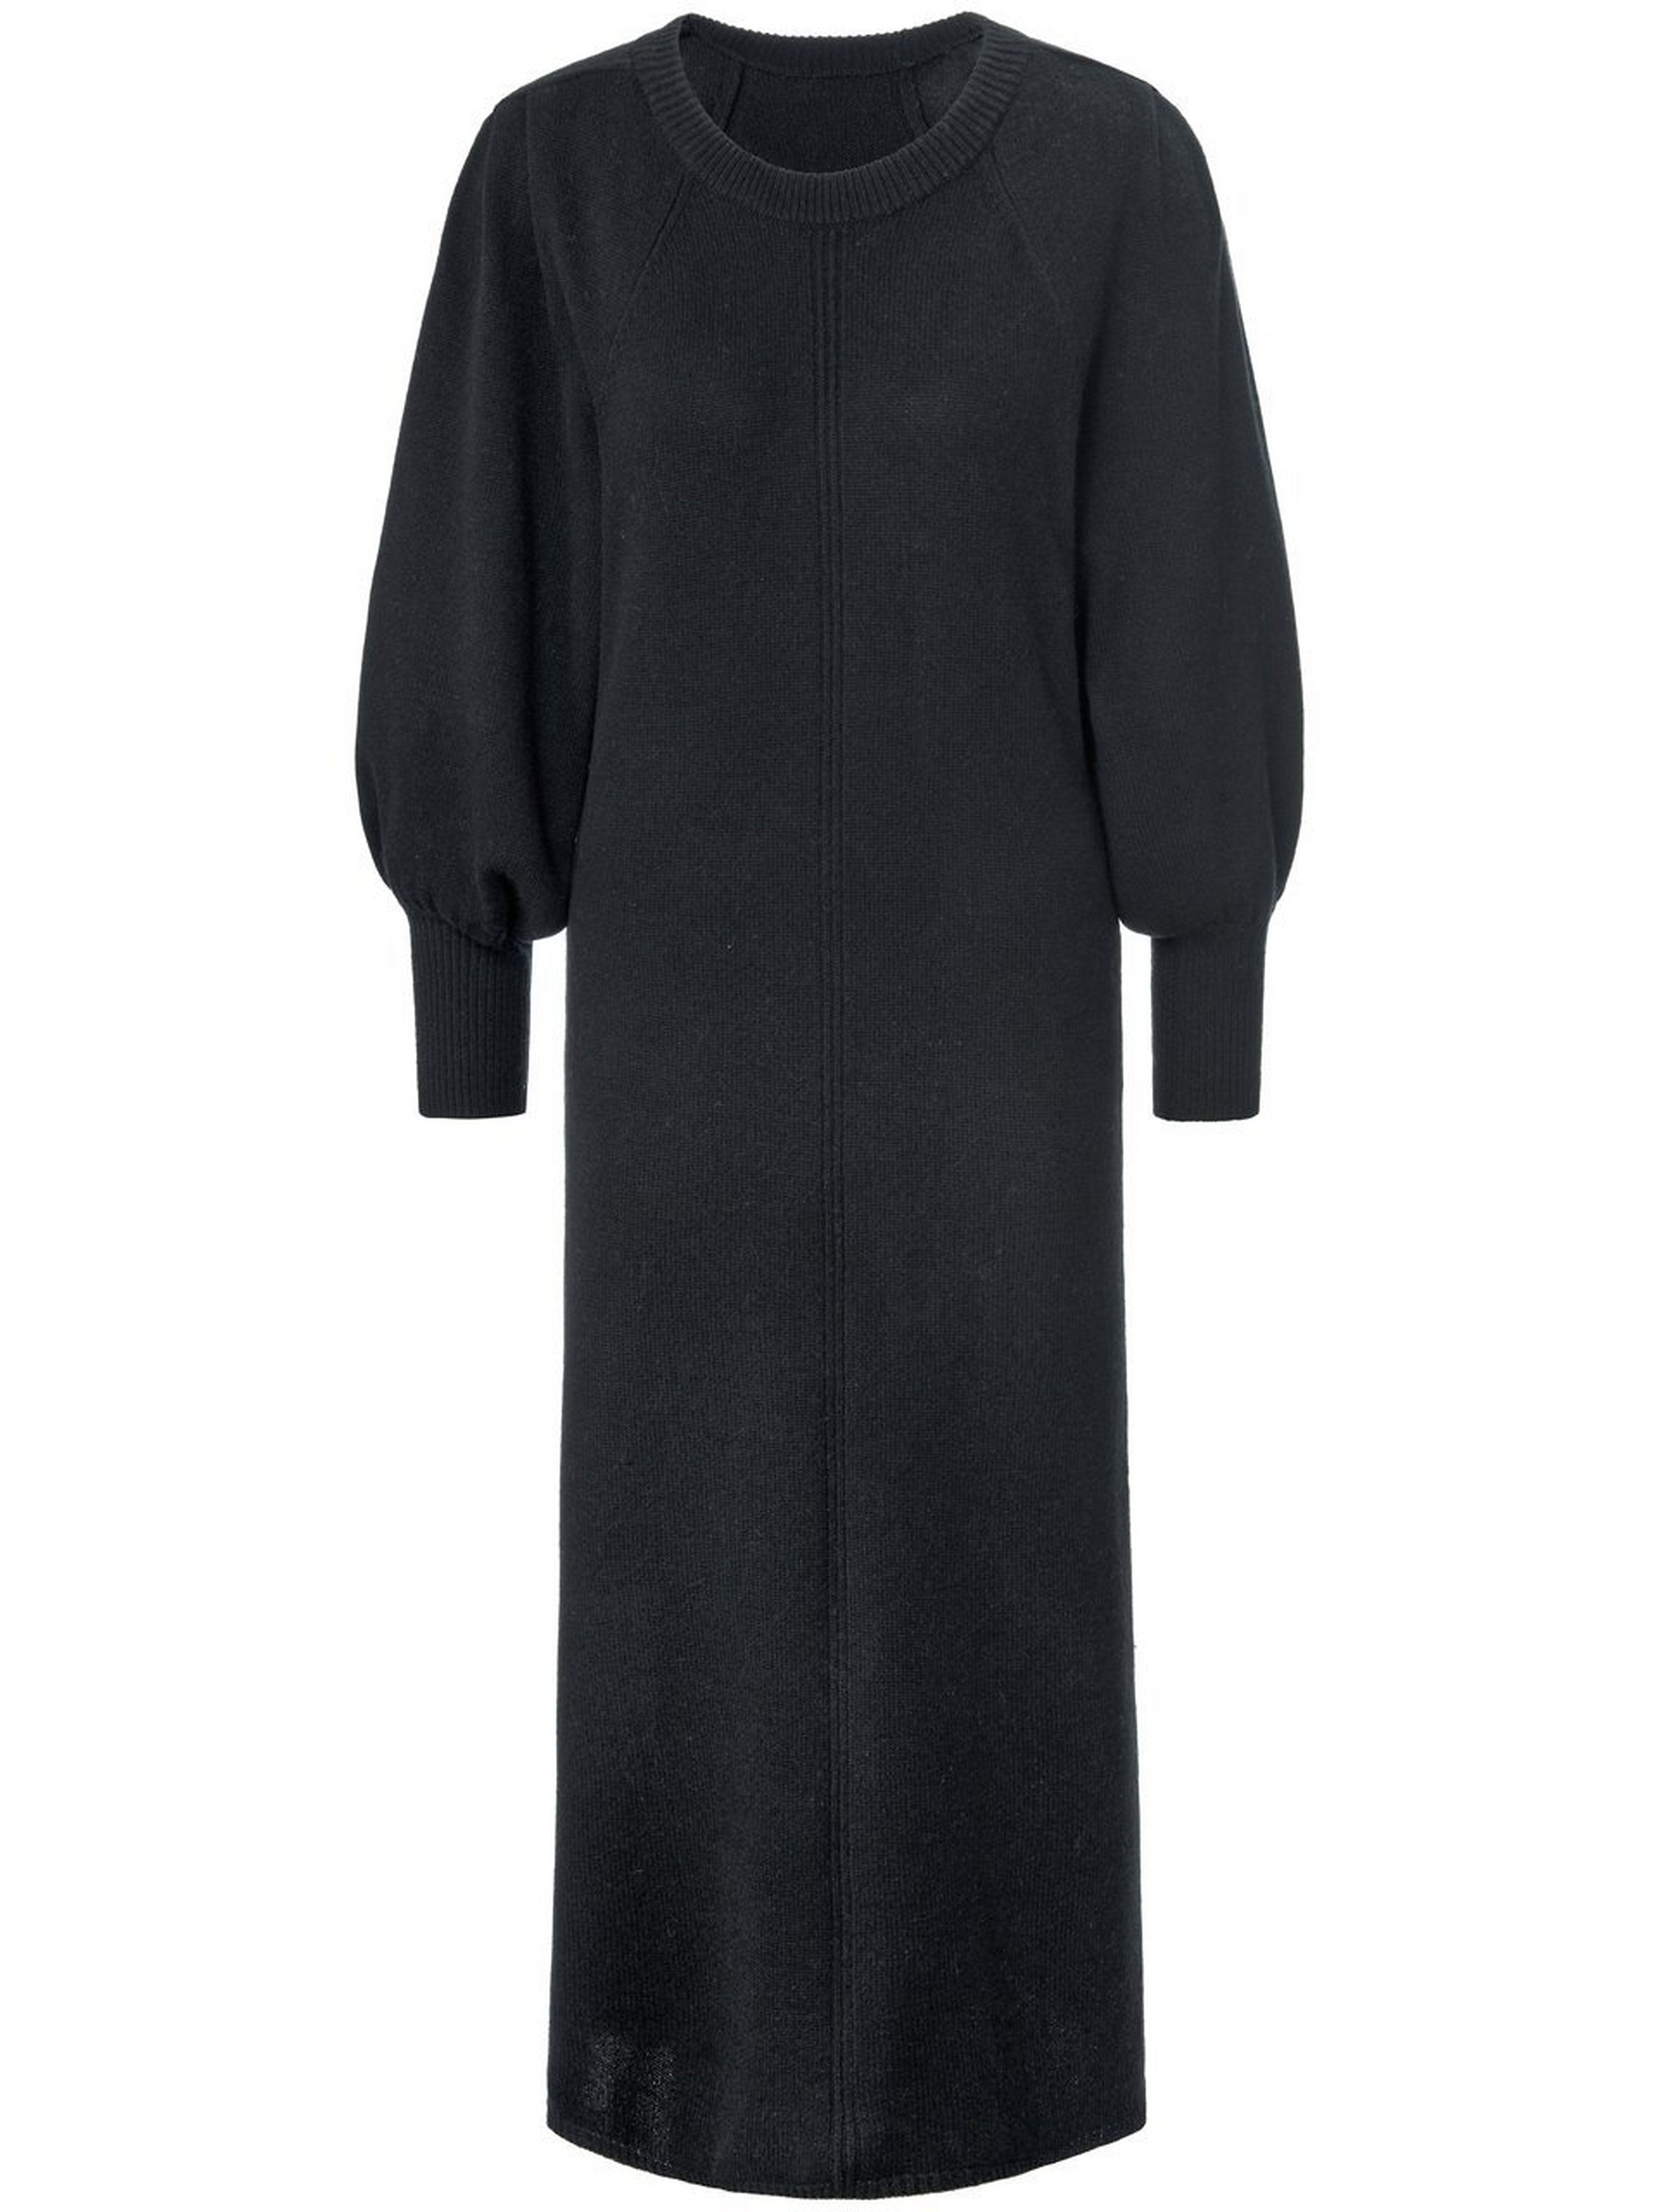 La robe en maille avec larges manches raglan  Laura Biagiotti ROMA noir